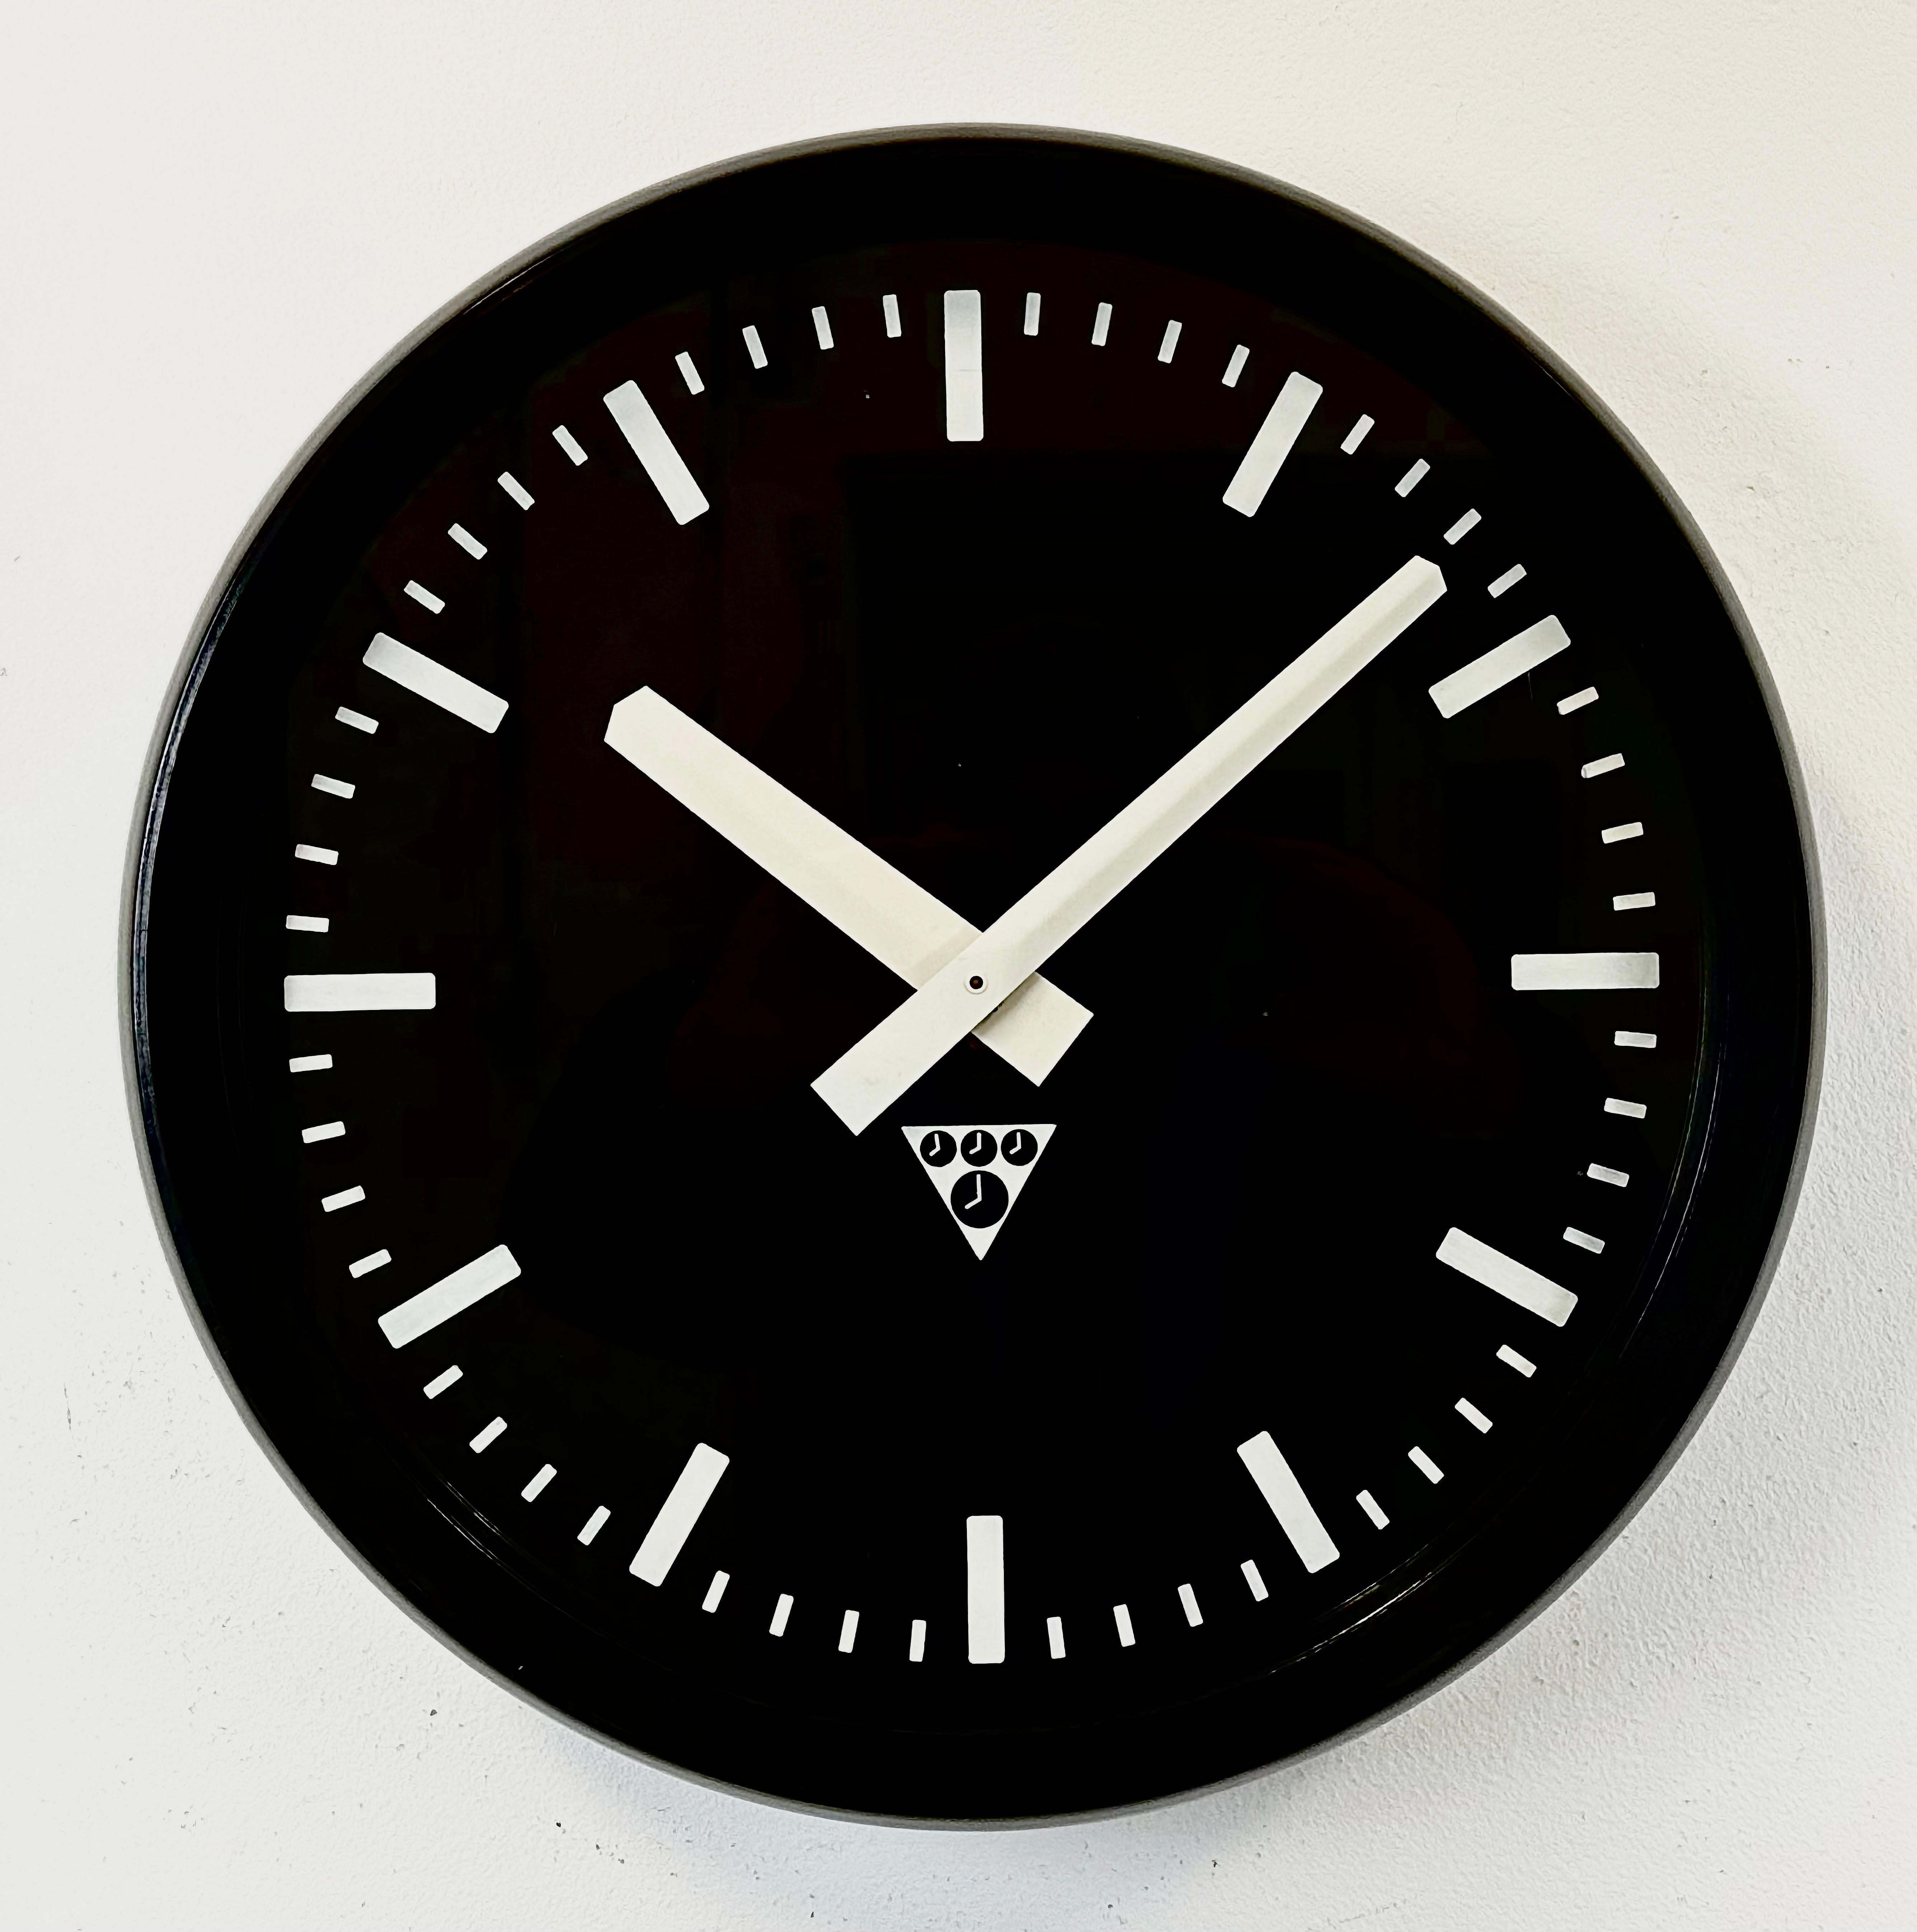 Diese Wanduhr wurde von Pragotron in der ehemaligen Tschechoslowakei in den 1970er Jahren hergestellt. Die Uhr hat einen Rahmen aus braunem Bakelit, ein schwarzes Bakelit-Zifferblatt, Aluminiumzeiger und eine Abdeckung aus Klarglas. Das Stück wurde